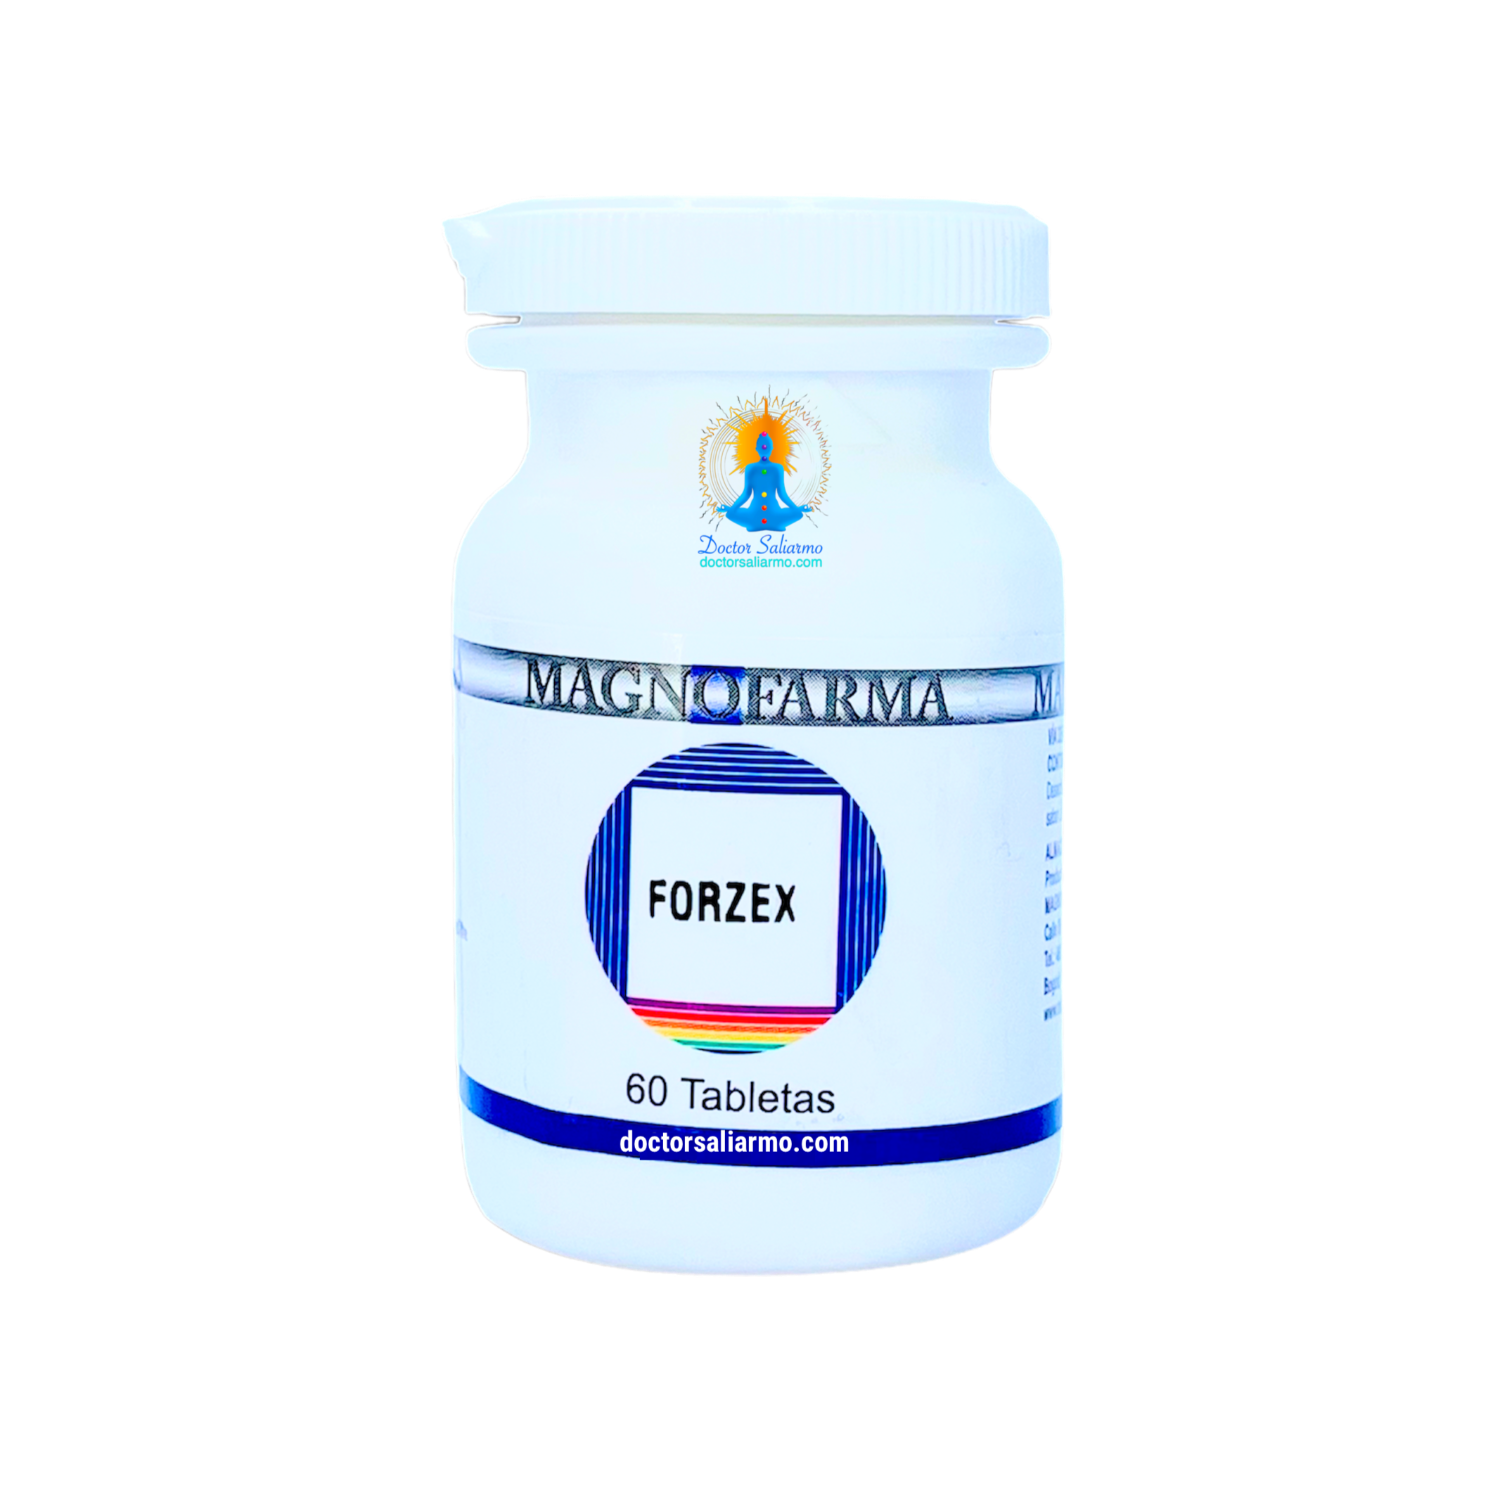 Forzex tabletas están indicadas para la disfunción sexual masculina y/o disfunción erectil.